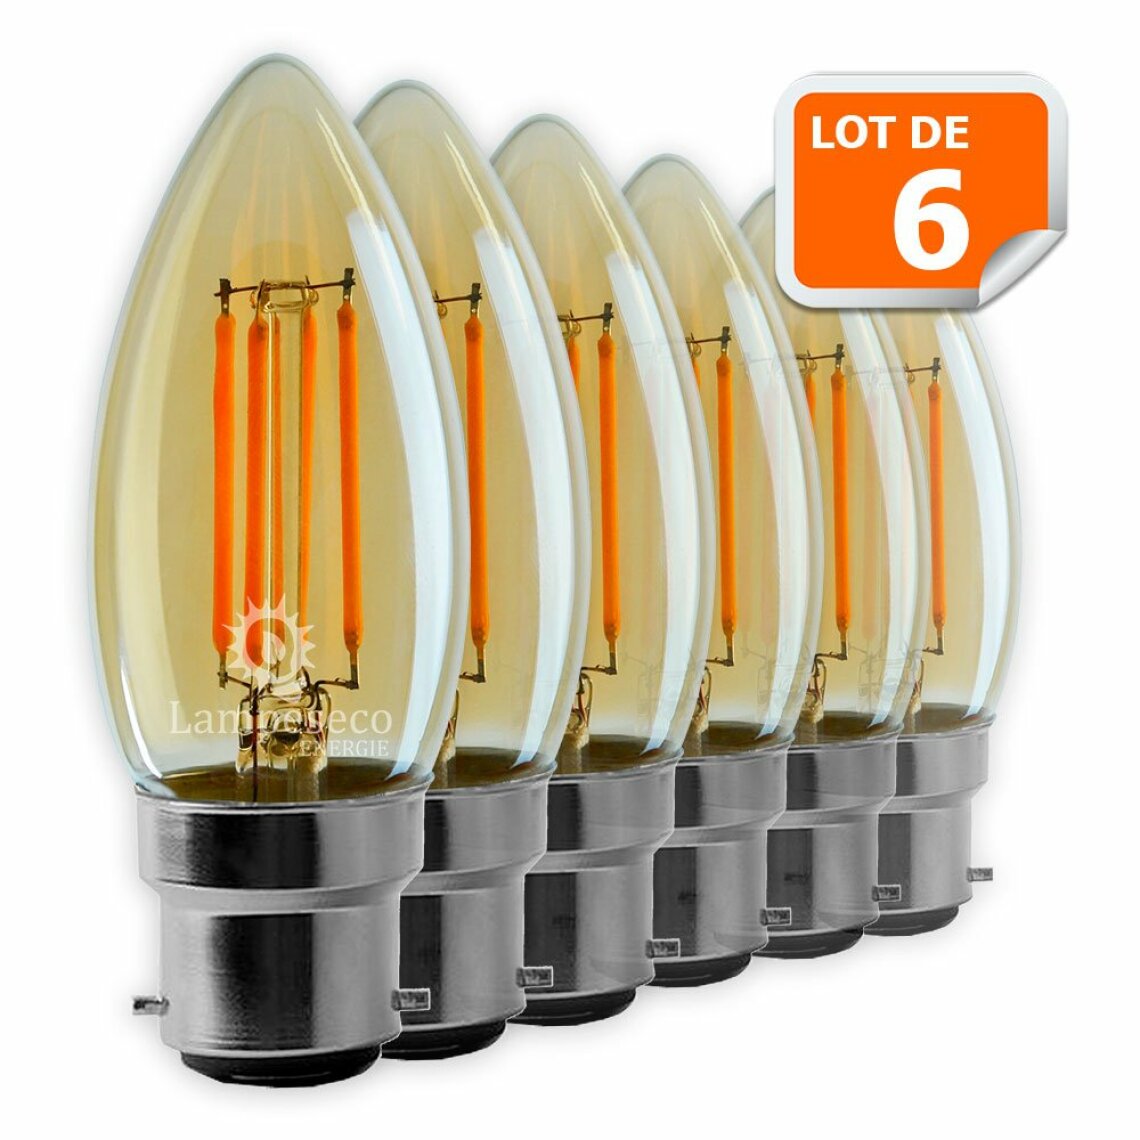 Lampesecoenergie - Lot de 6 Ampoules Led Flamme Filament Doré 4 watt (éq. 42 Watt) Culot B22 - Ampoules LED